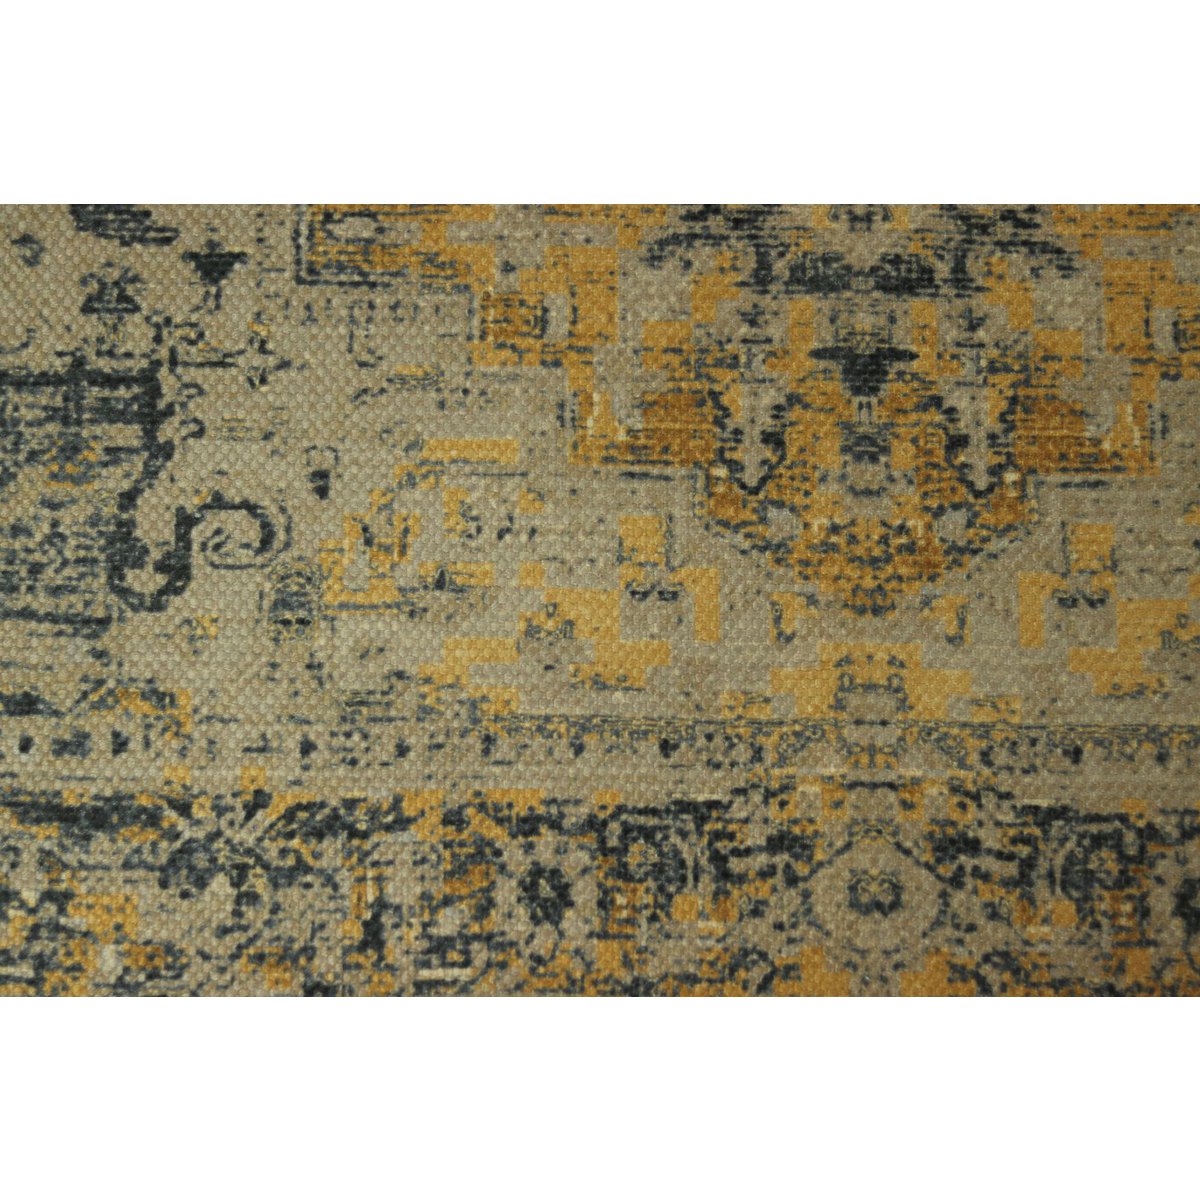 Teppich Vintage Classic – 160 x 230 – Gelb/Grau/Blau/Altrosa – Polyester